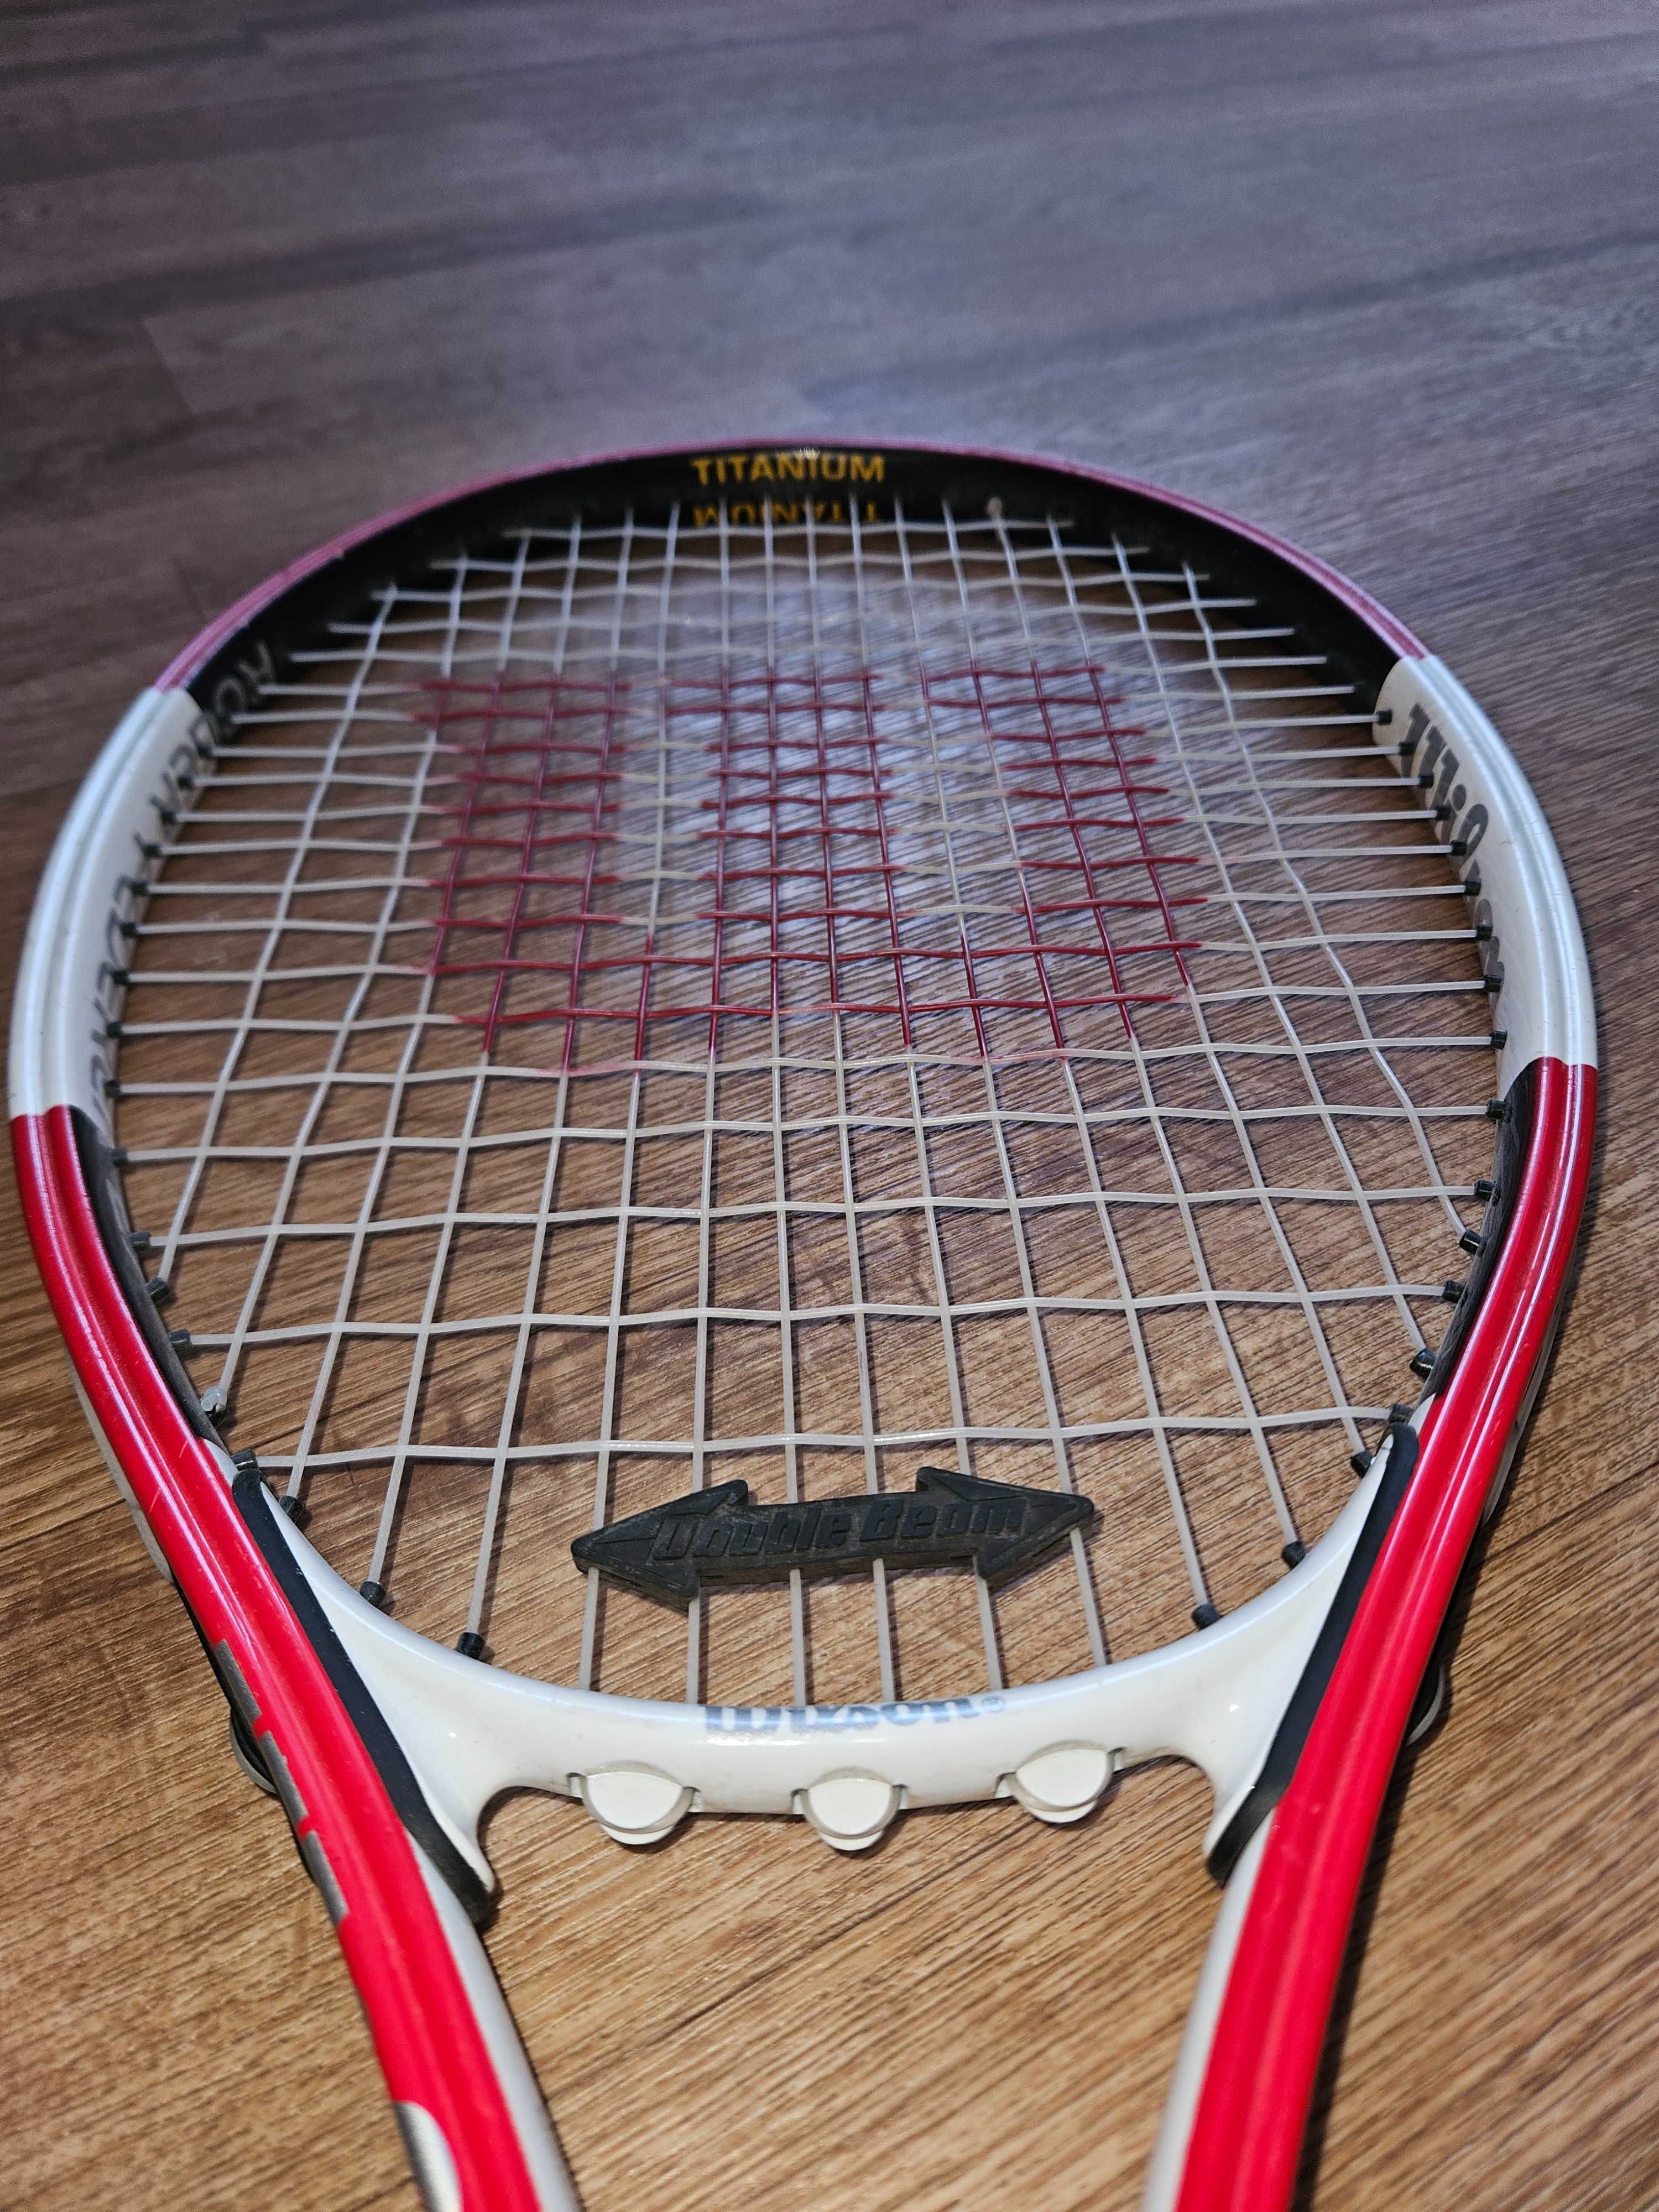 Продам ракетку Wilson большего тенниса в отличном состоянии